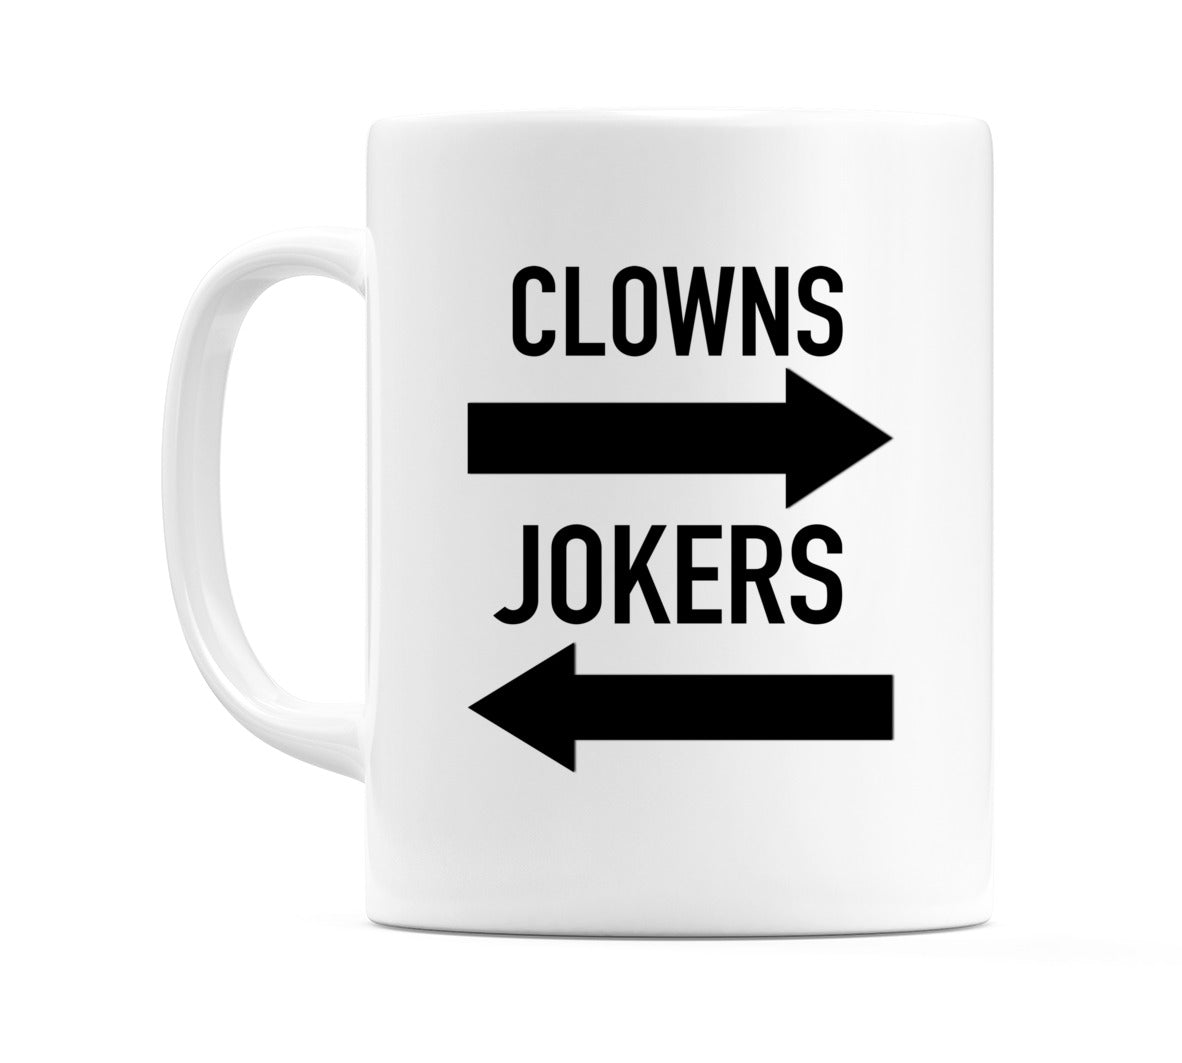 Clowns & Jokers Mug